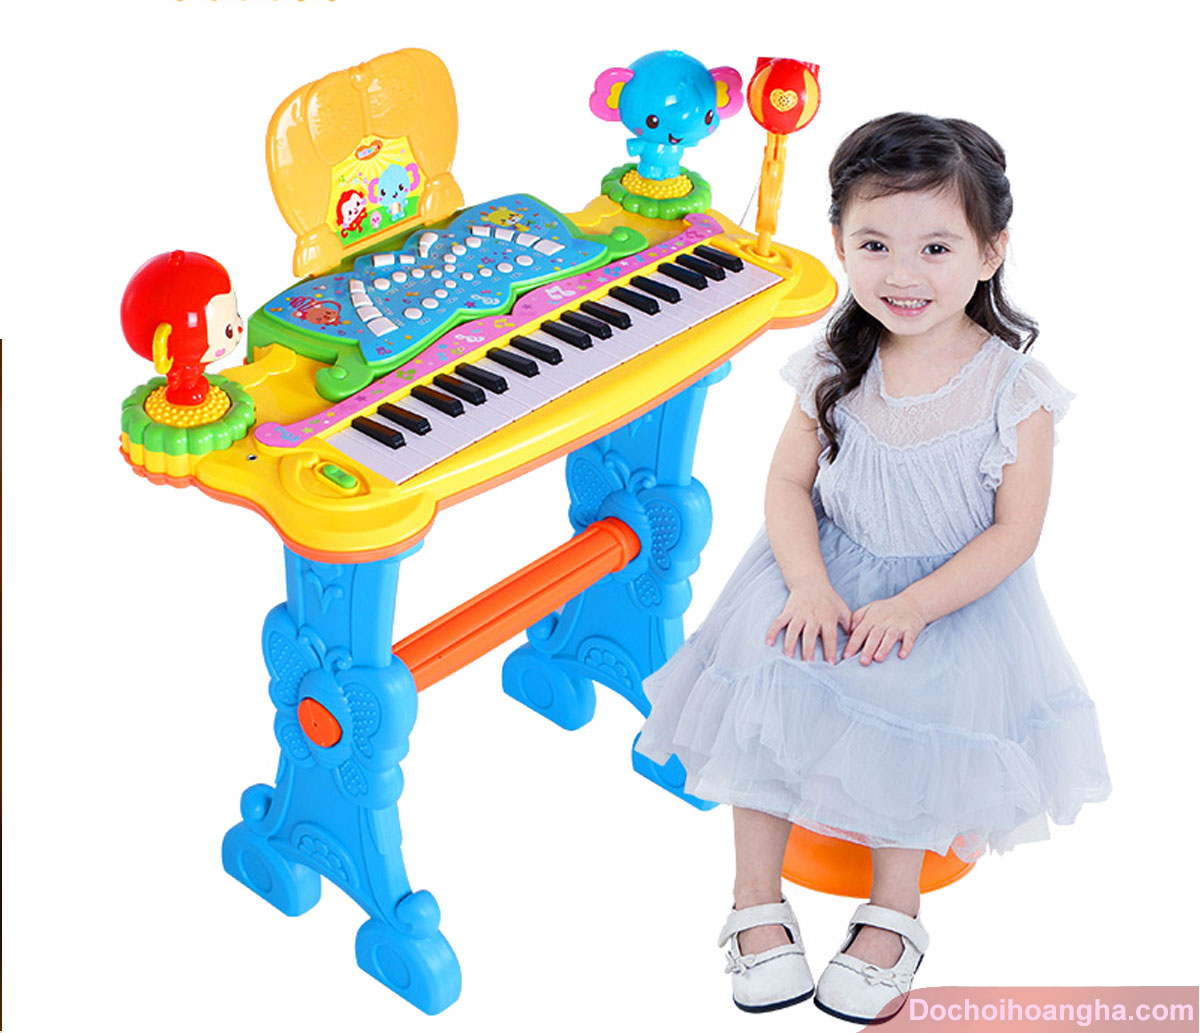 Đàn piano trẻ em 61 phím và có micro.